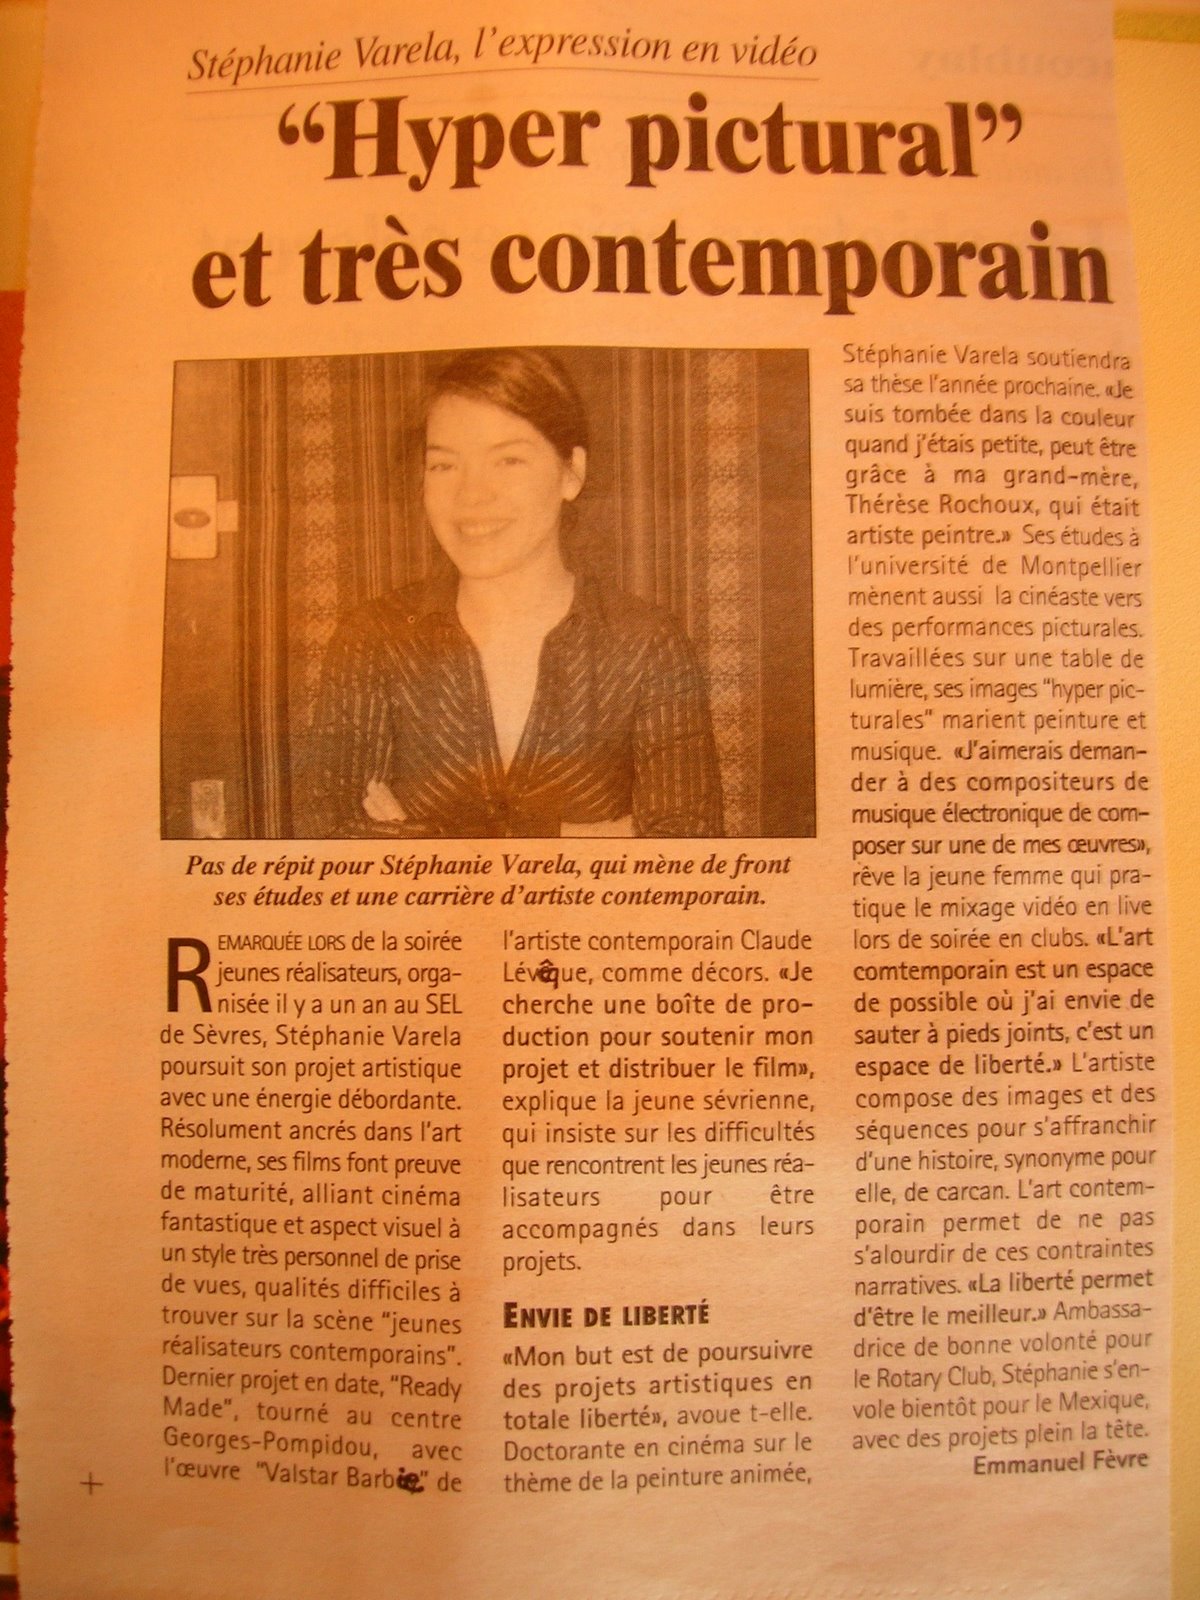 18 AVRIL 2007 : "Toutes les nouvelles de Versailles"